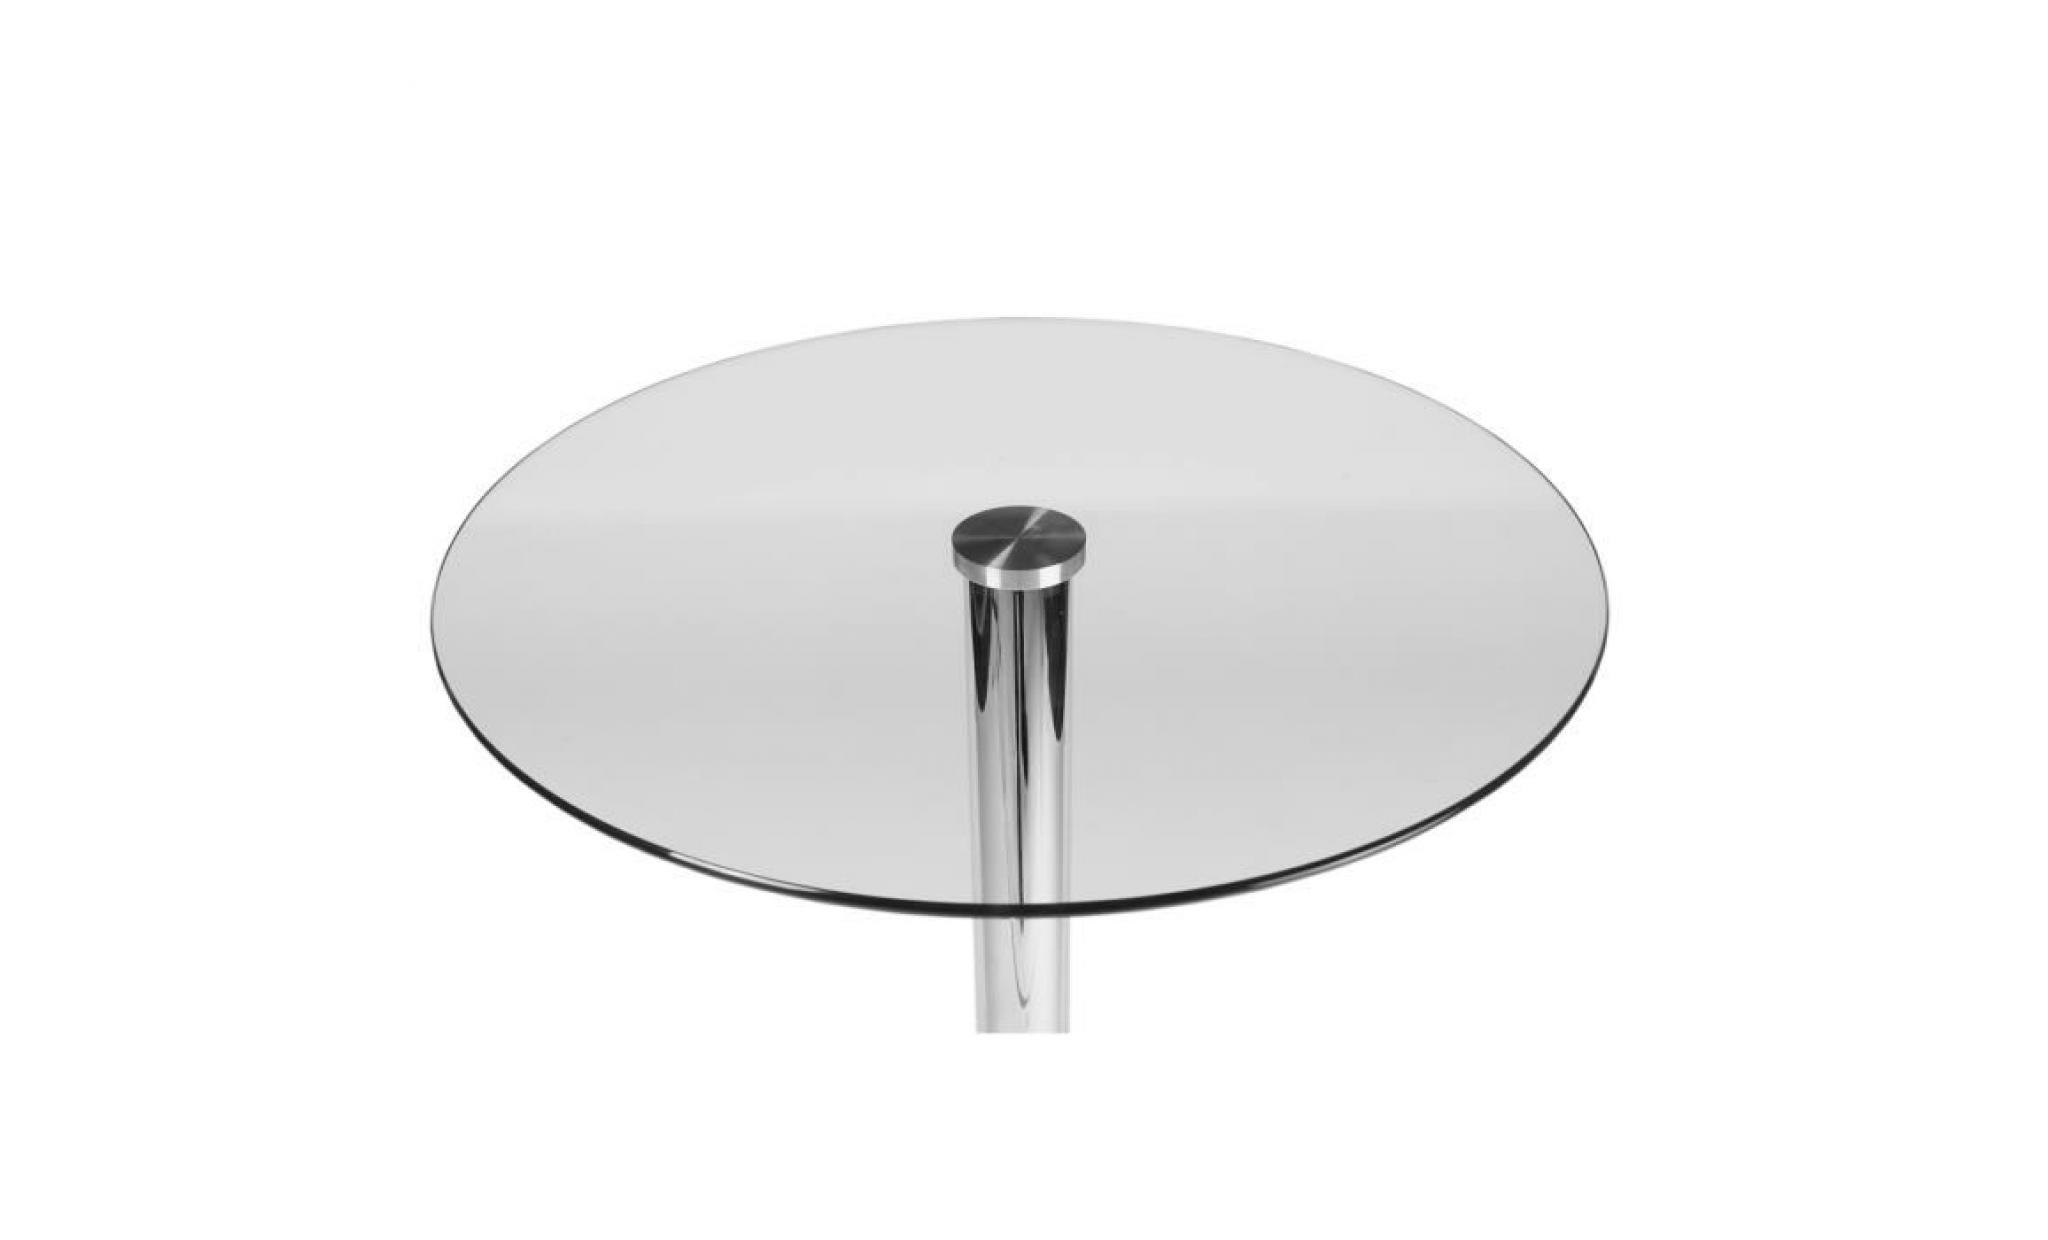 clp table haute ronde Ø 60 cm avec plateau en verre, pied en métal, hauteur 105 cm, très stable, idéale pour la gastronomie pas cher